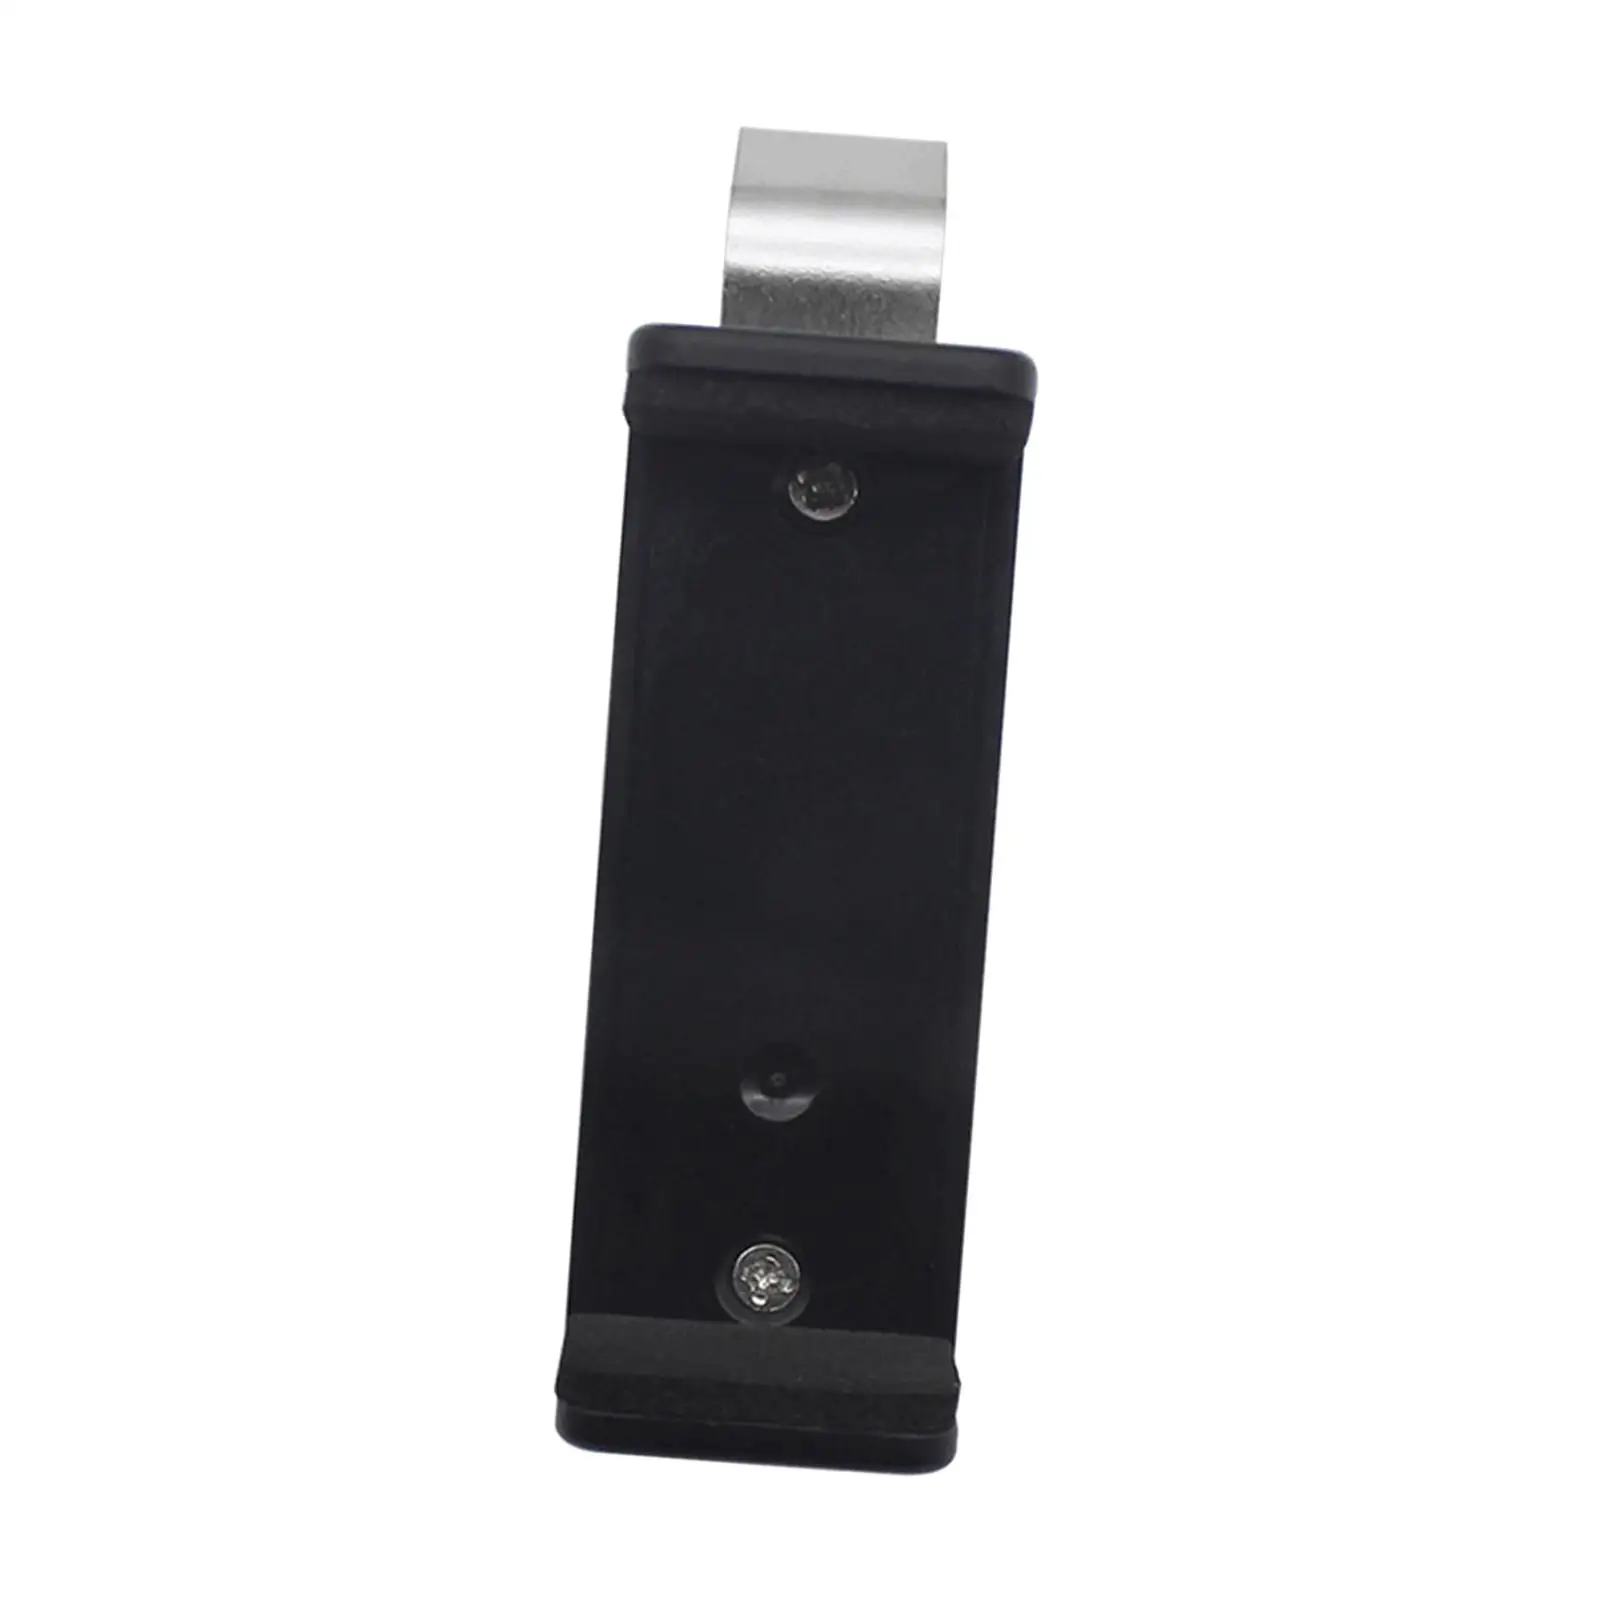 Garage Door Control Clip Garage Remote Clip for Visor Portable Car Sun Visor Clip Holder Car Keychain Barrier Opener Fitments